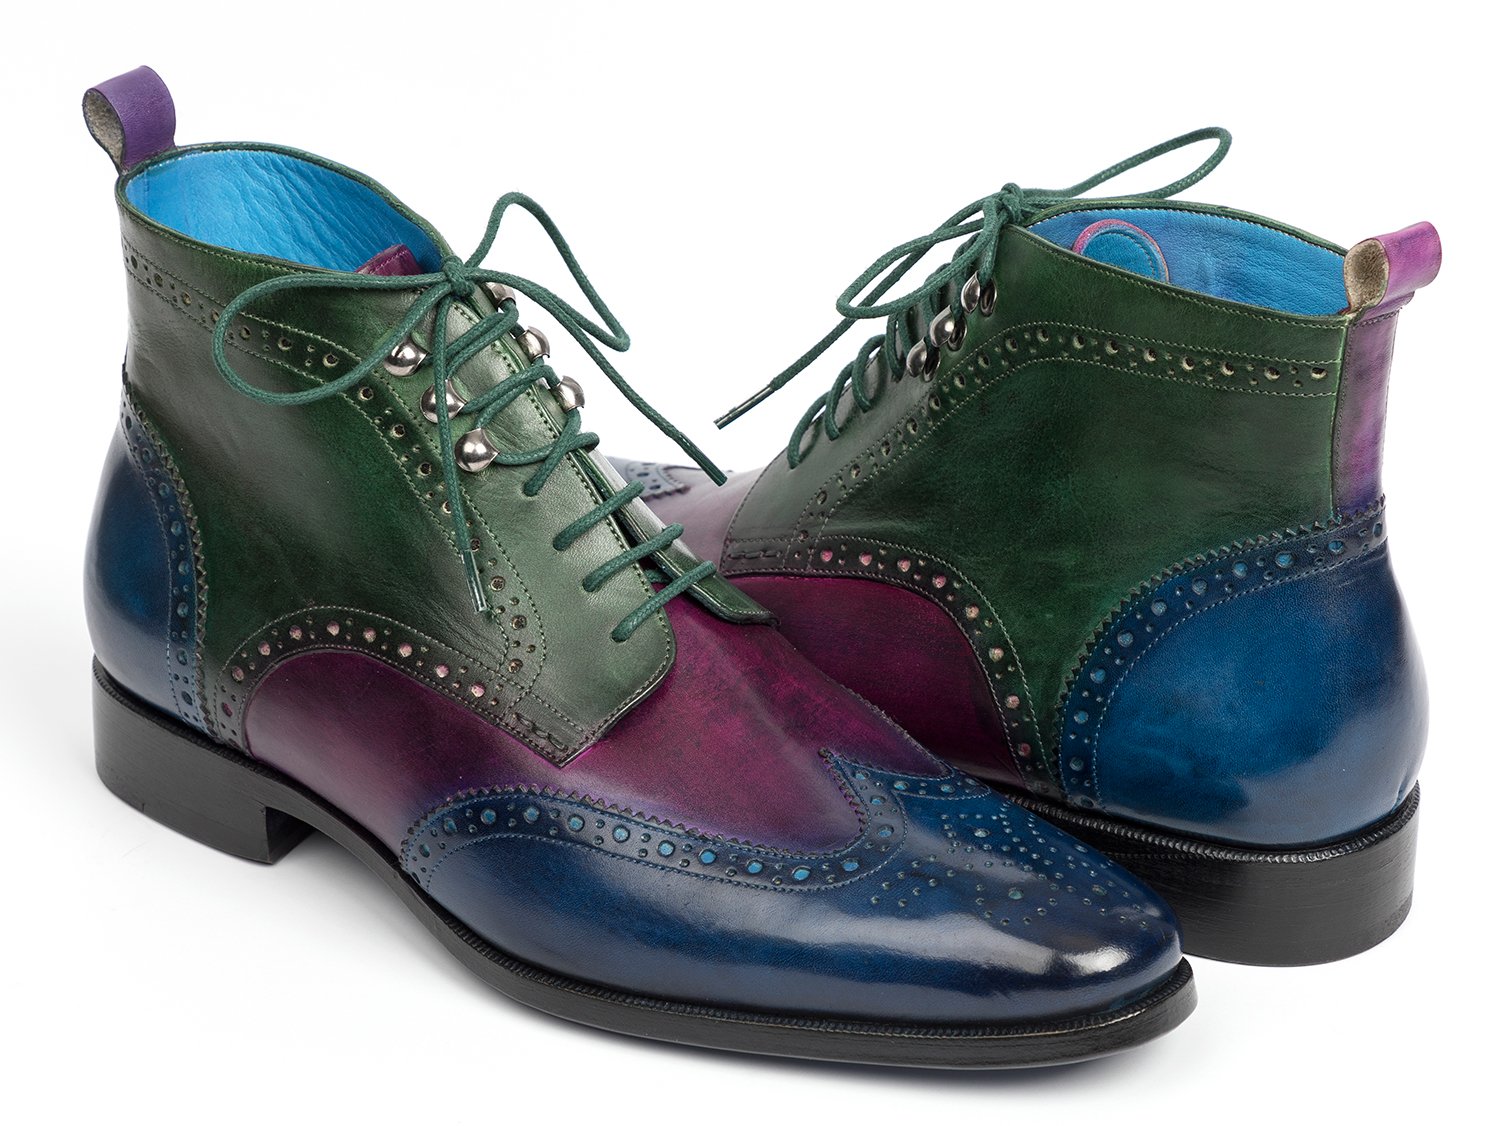 Paul Parkman 777 Blue / Purple / Green Wingtip Ankle Boots Shoes.